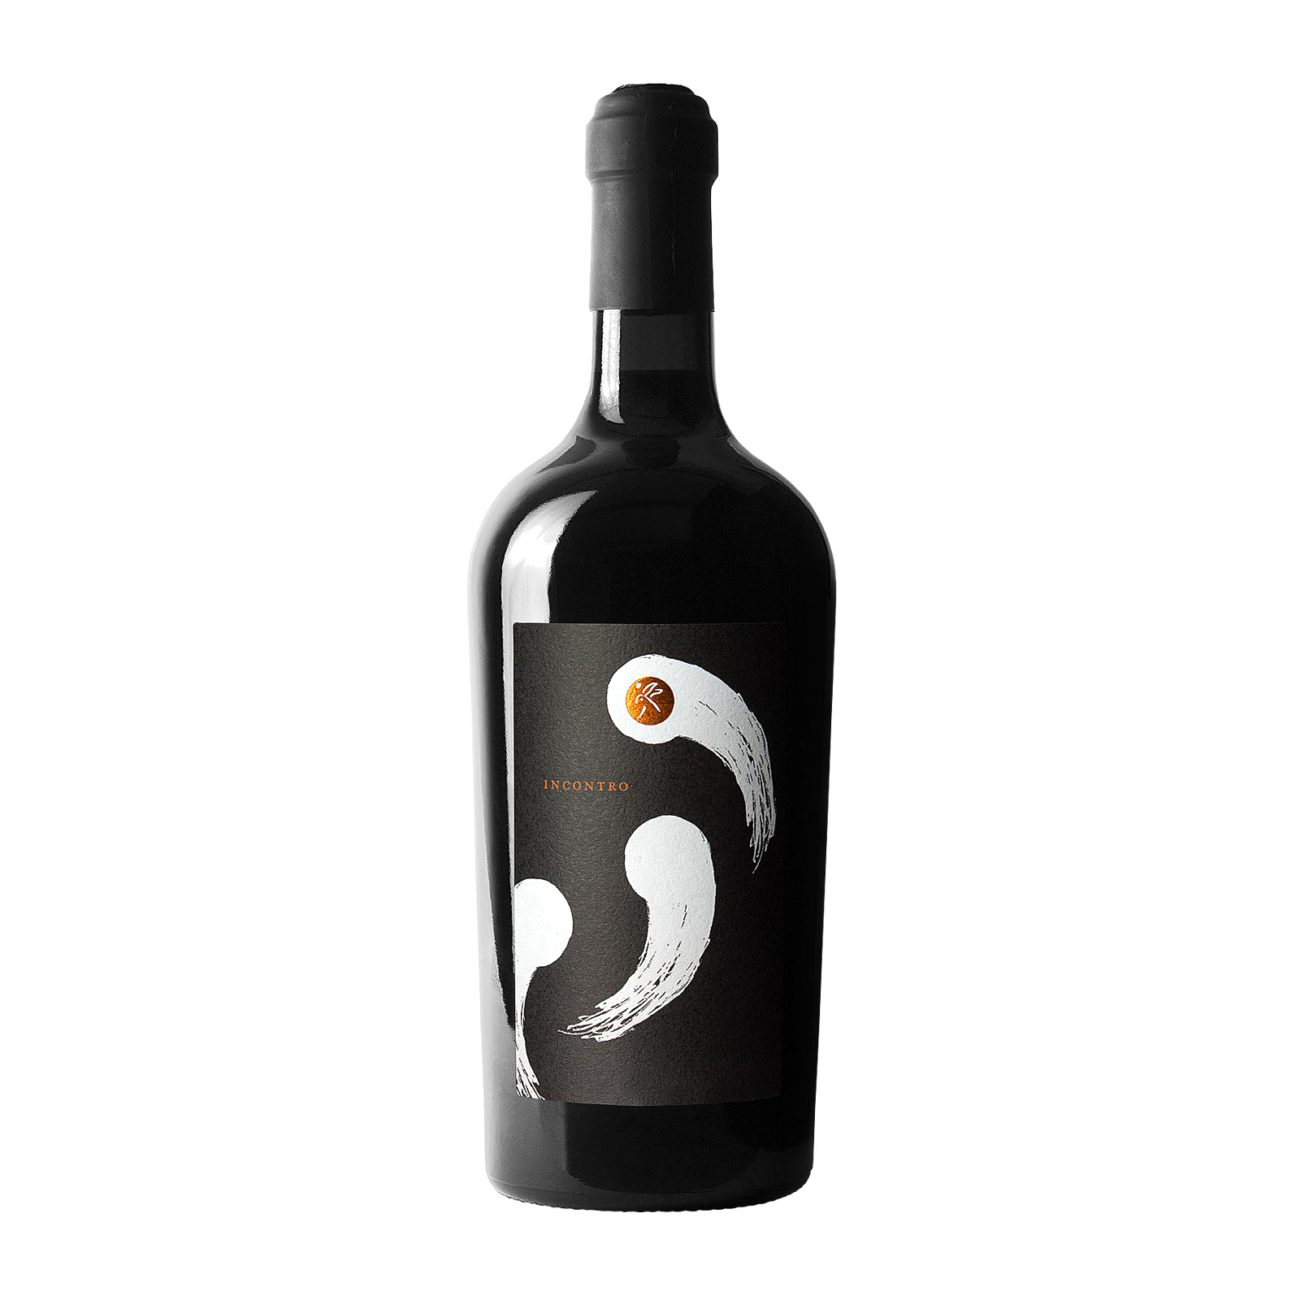 Label Design for “La Lepre e la Luna” Wines